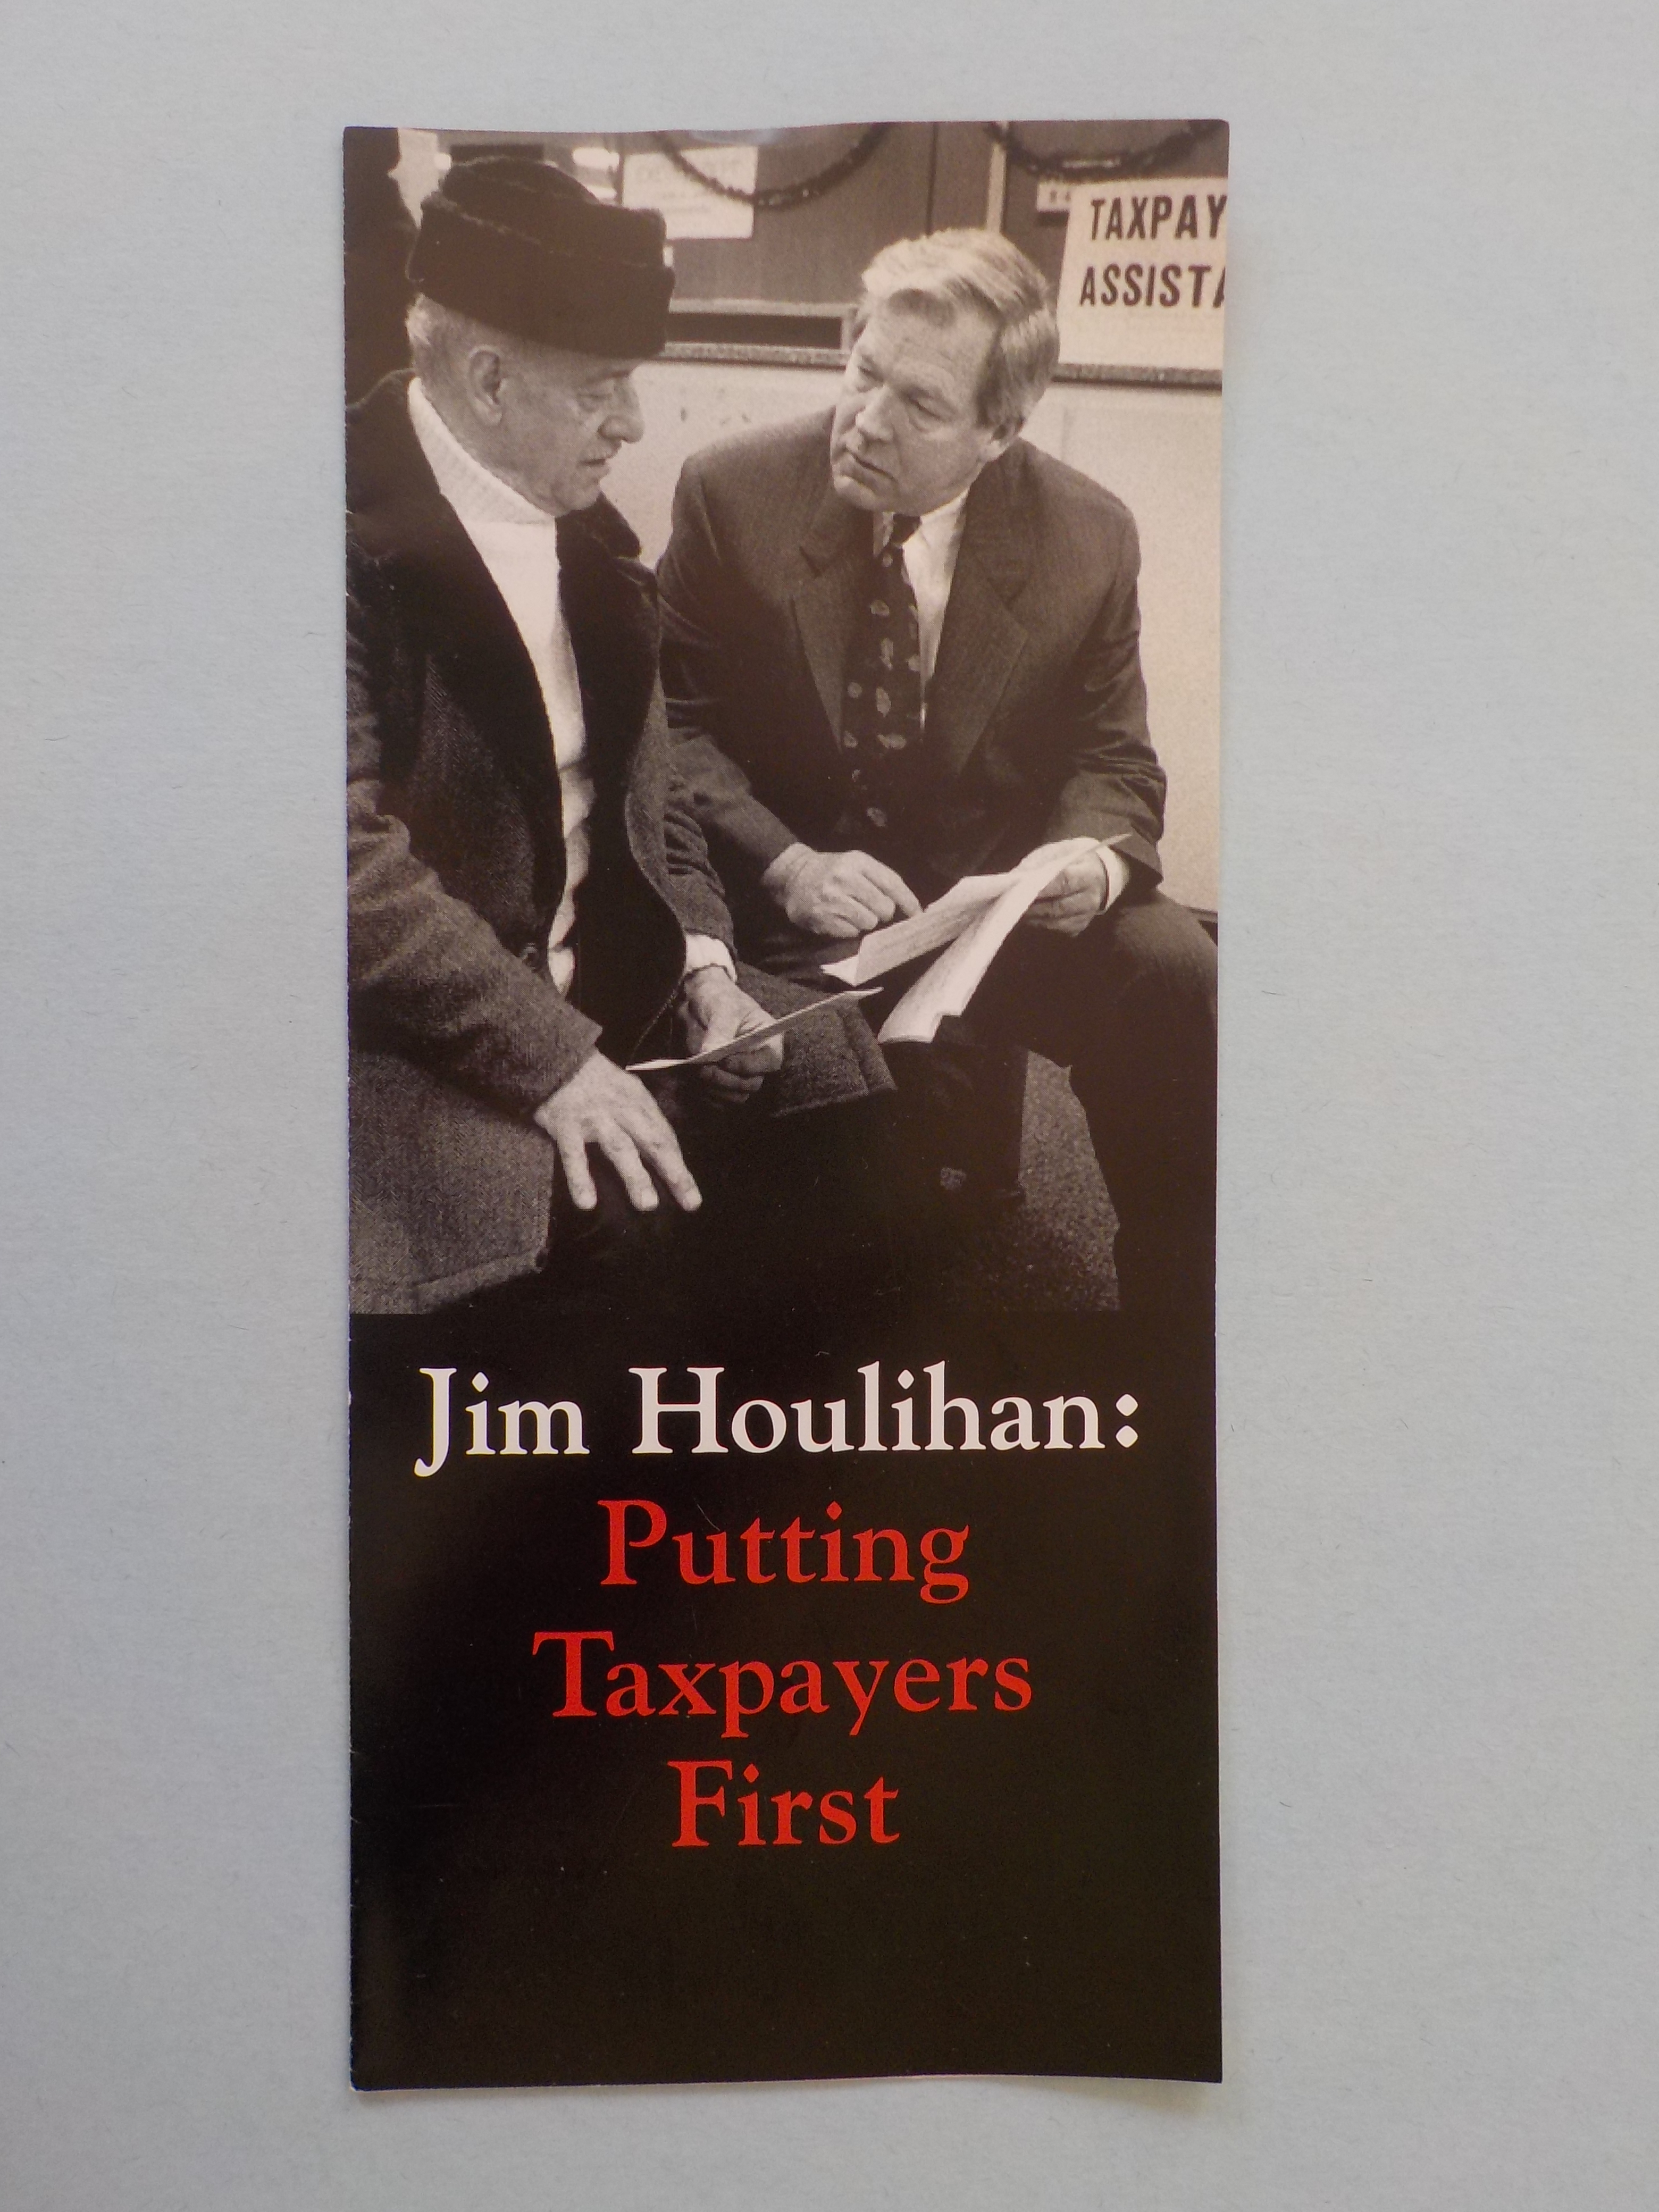 Jim Houlihan